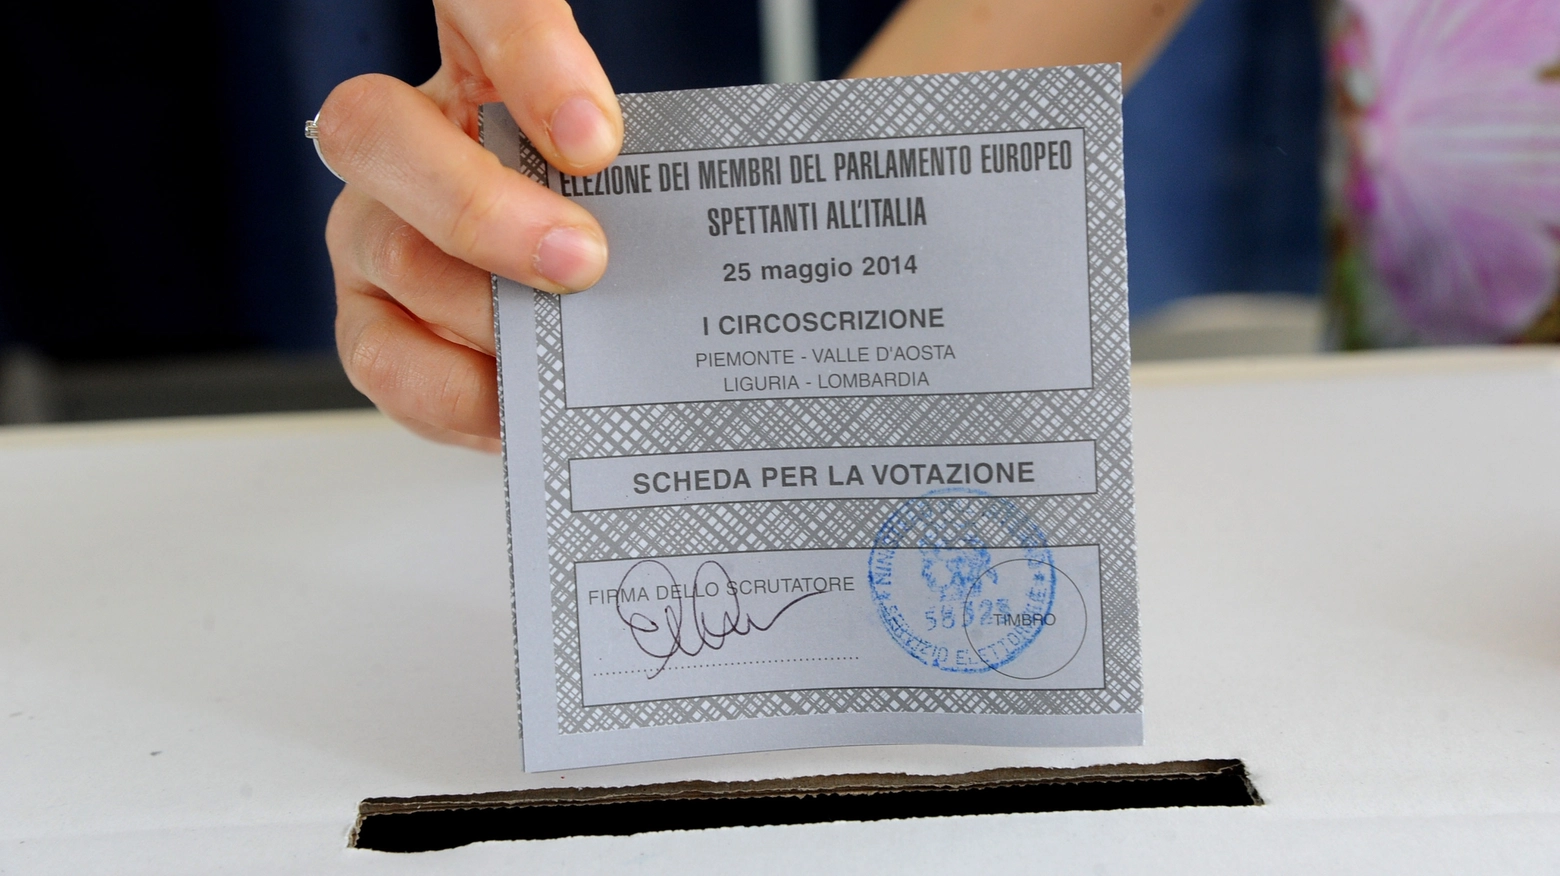 Saranno circa 830mila gli studenti italiani che potranno recarsi alle urne l’8 e il 9 giugno direttamente nella regione in cui studiano